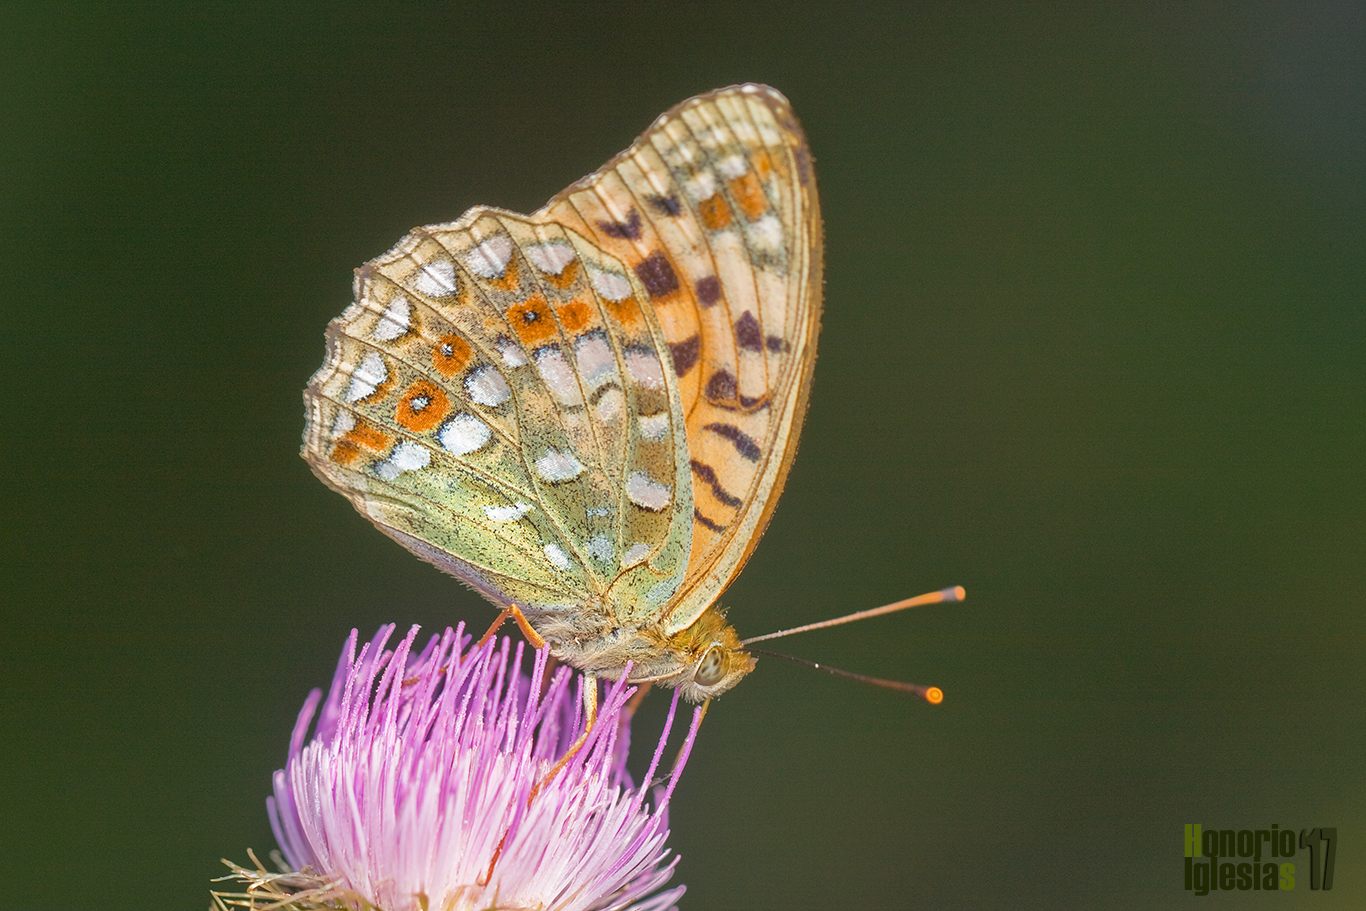 Reverso de mariposa nacarada adipe o adipe (Argynnis (=Fabriciana) adippe), la presencia de ocelos rojizos en la zona submarginal del ala posterior y manchas blancas ayuda a identificación de la especie